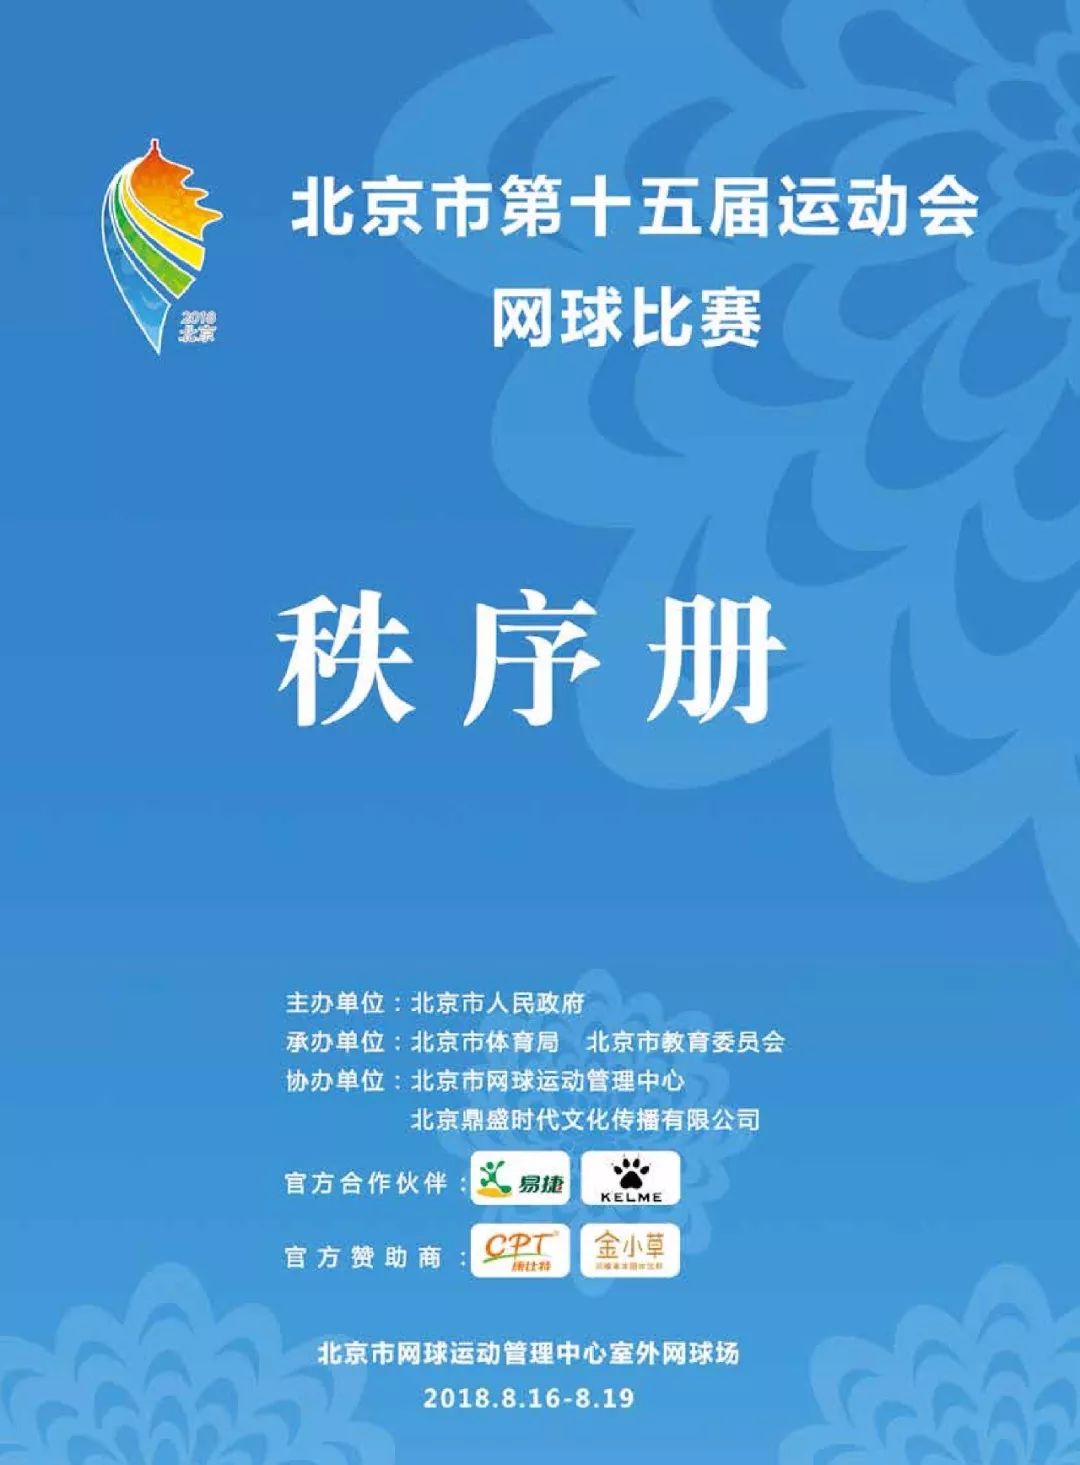 北京市第十五届运动会网球比赛秩序册